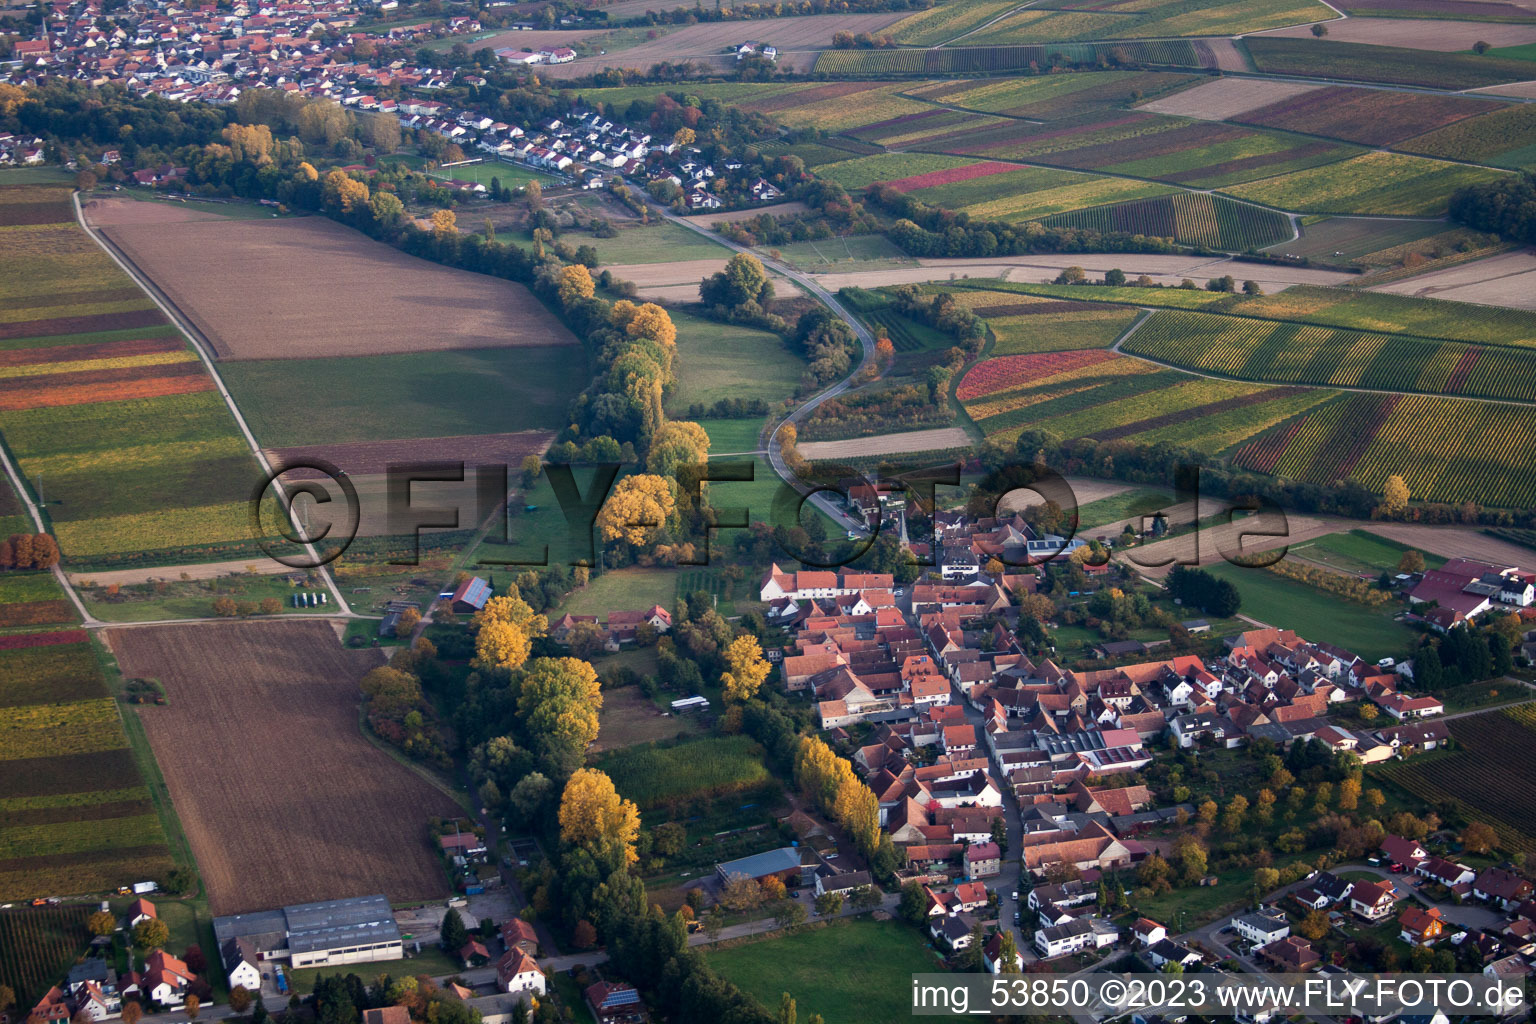 District Klingen in Heuchelheim-Klingen in the state Rhineland-Palatinate, Germany from above